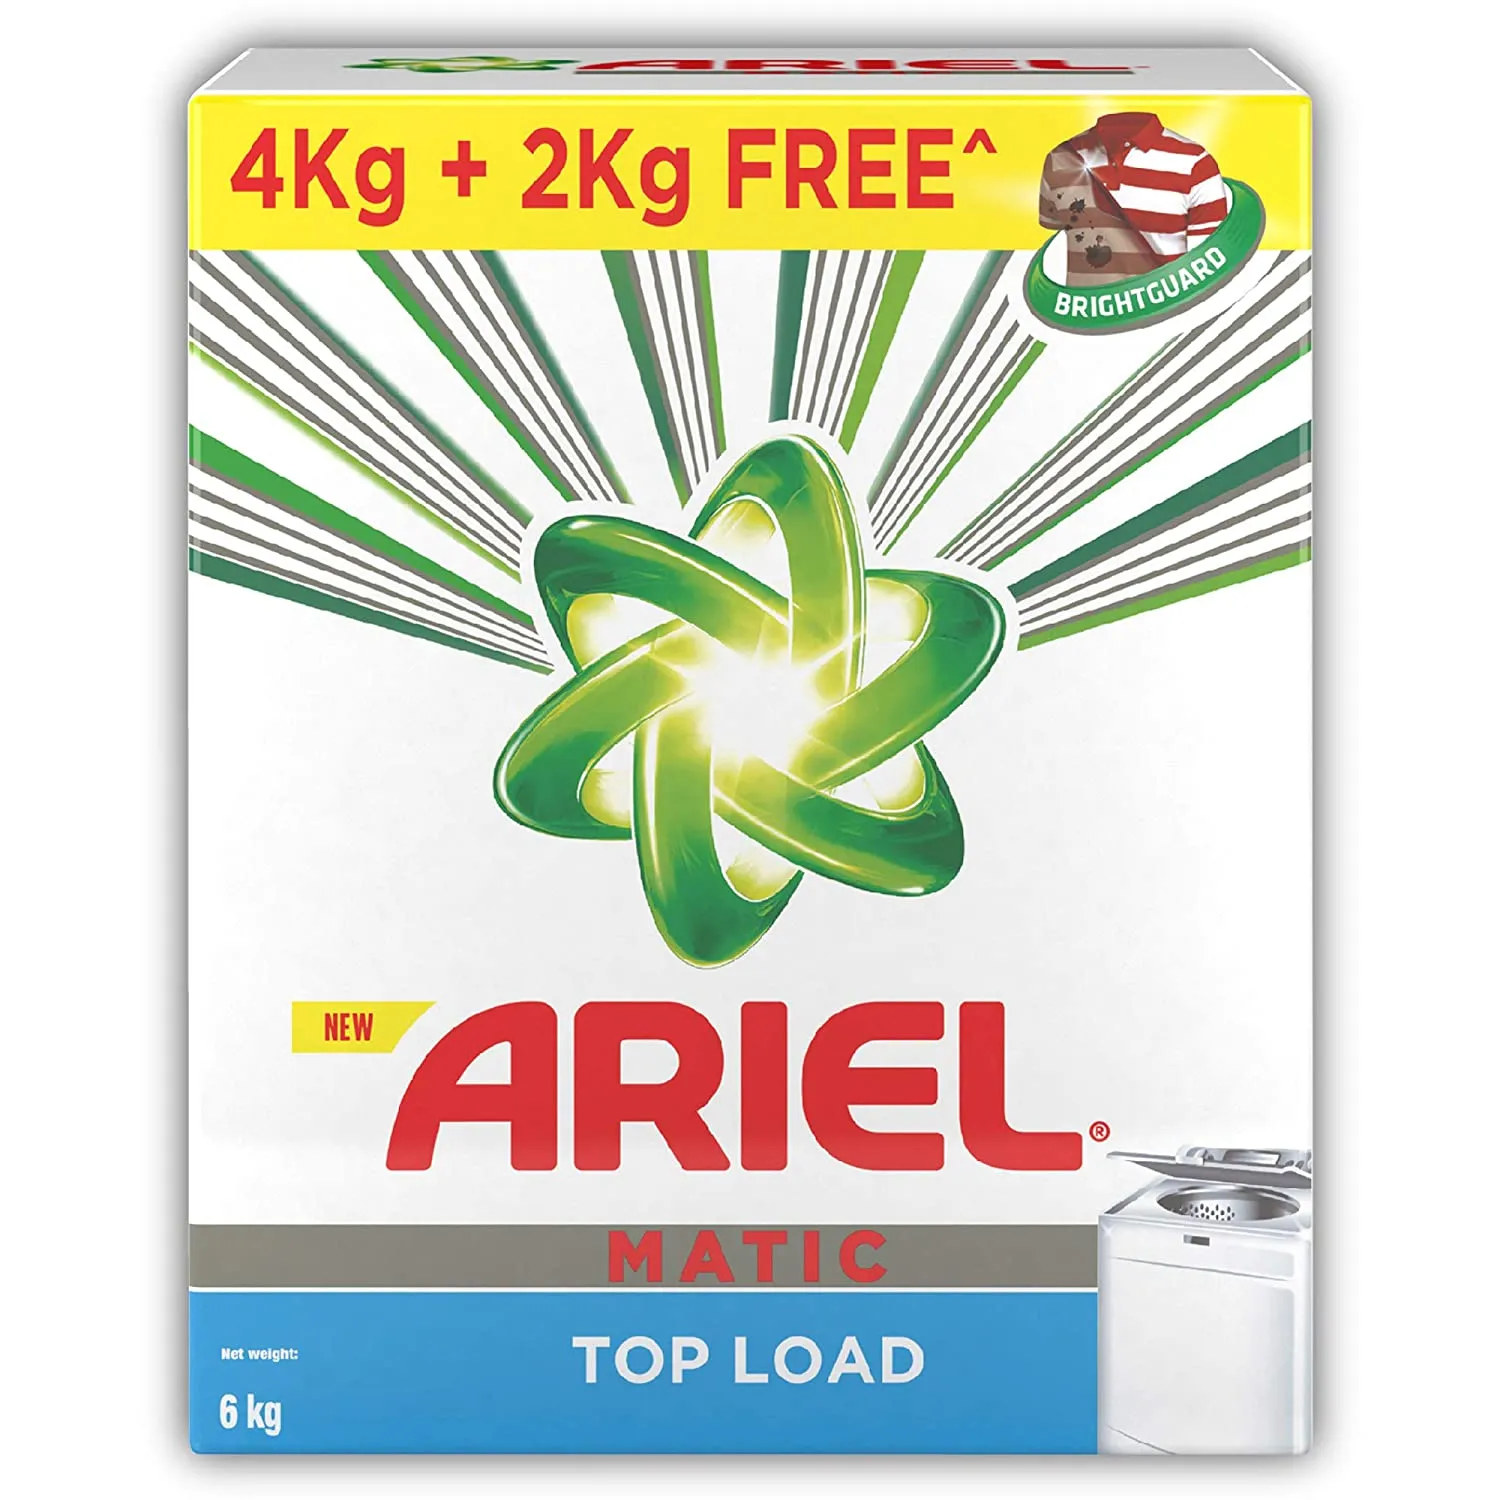 Ariel Matic Top Load Detergent Washing Powder 4+2 KG